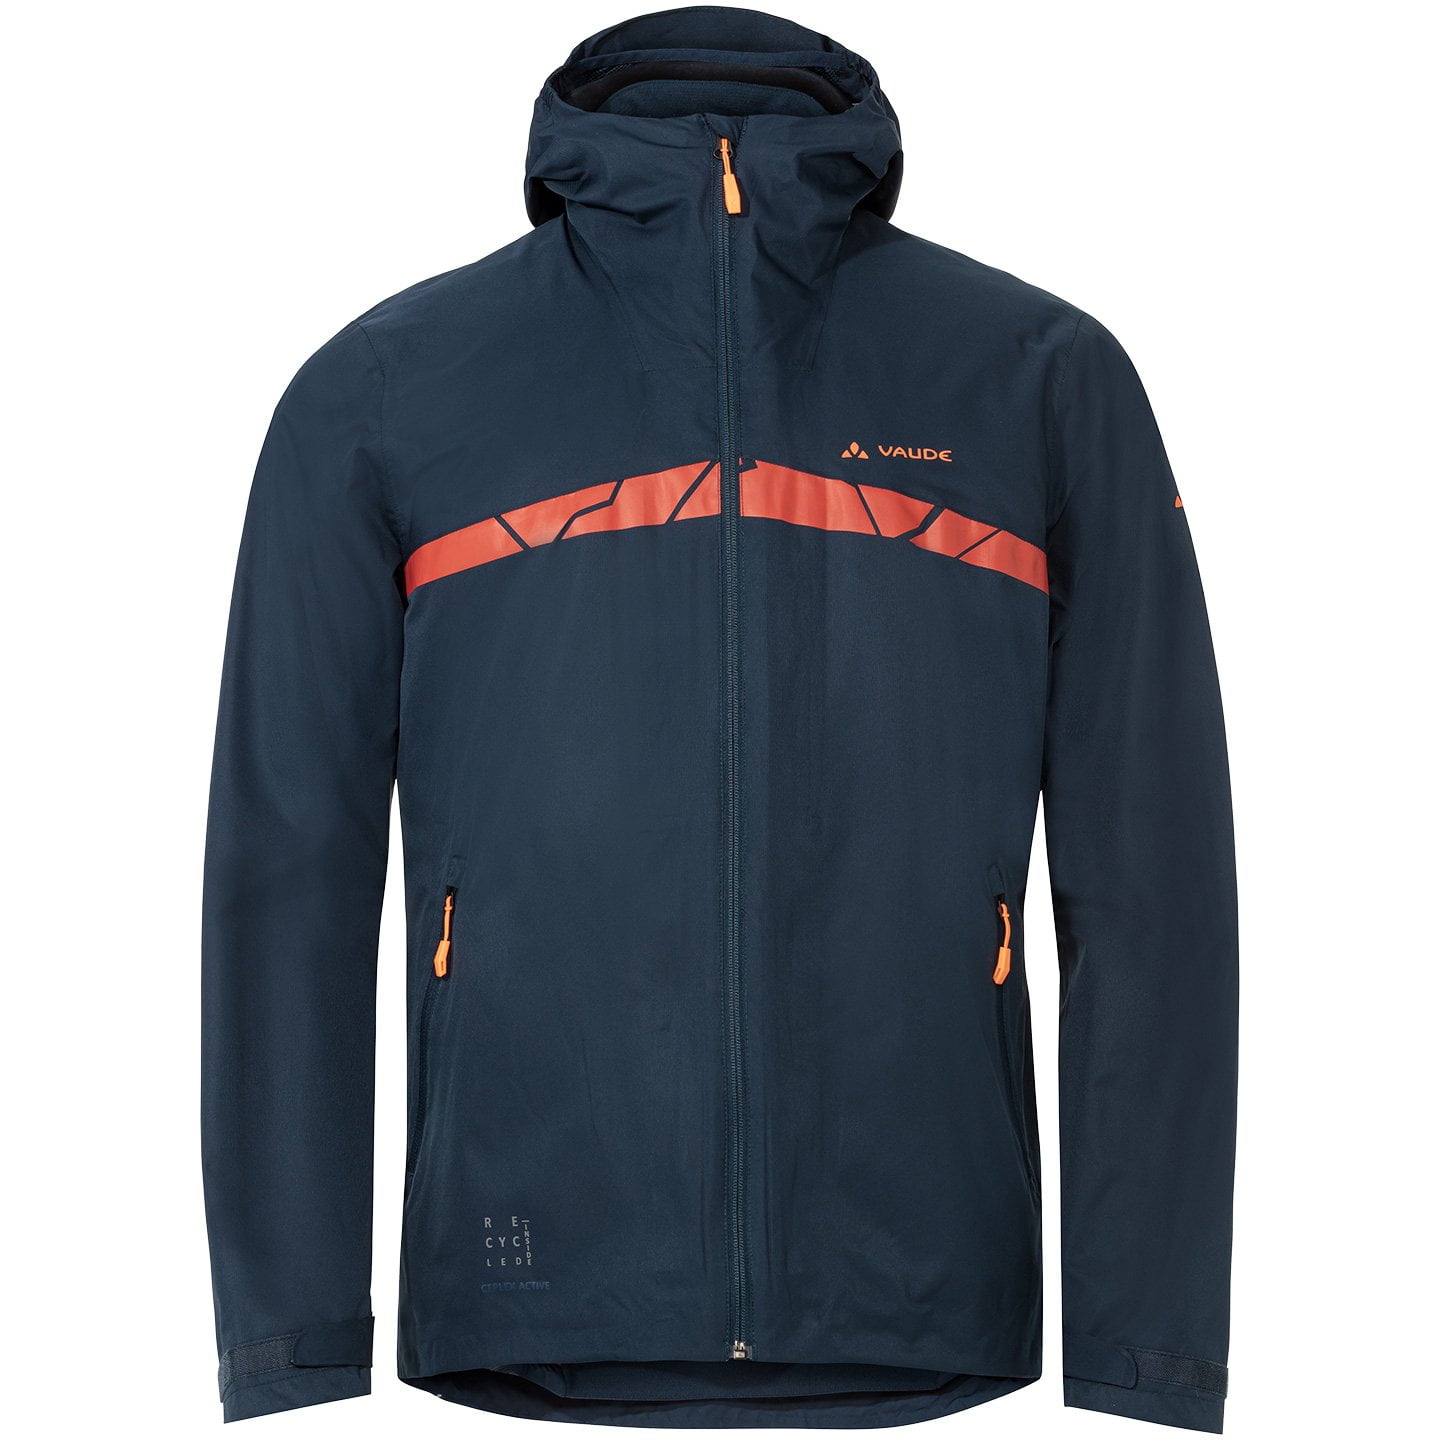 VAUDE MTB bike jacket Moab All Year 3in1 Waterproof Jacket, for men, size L, Cycle jacket, Rainwear